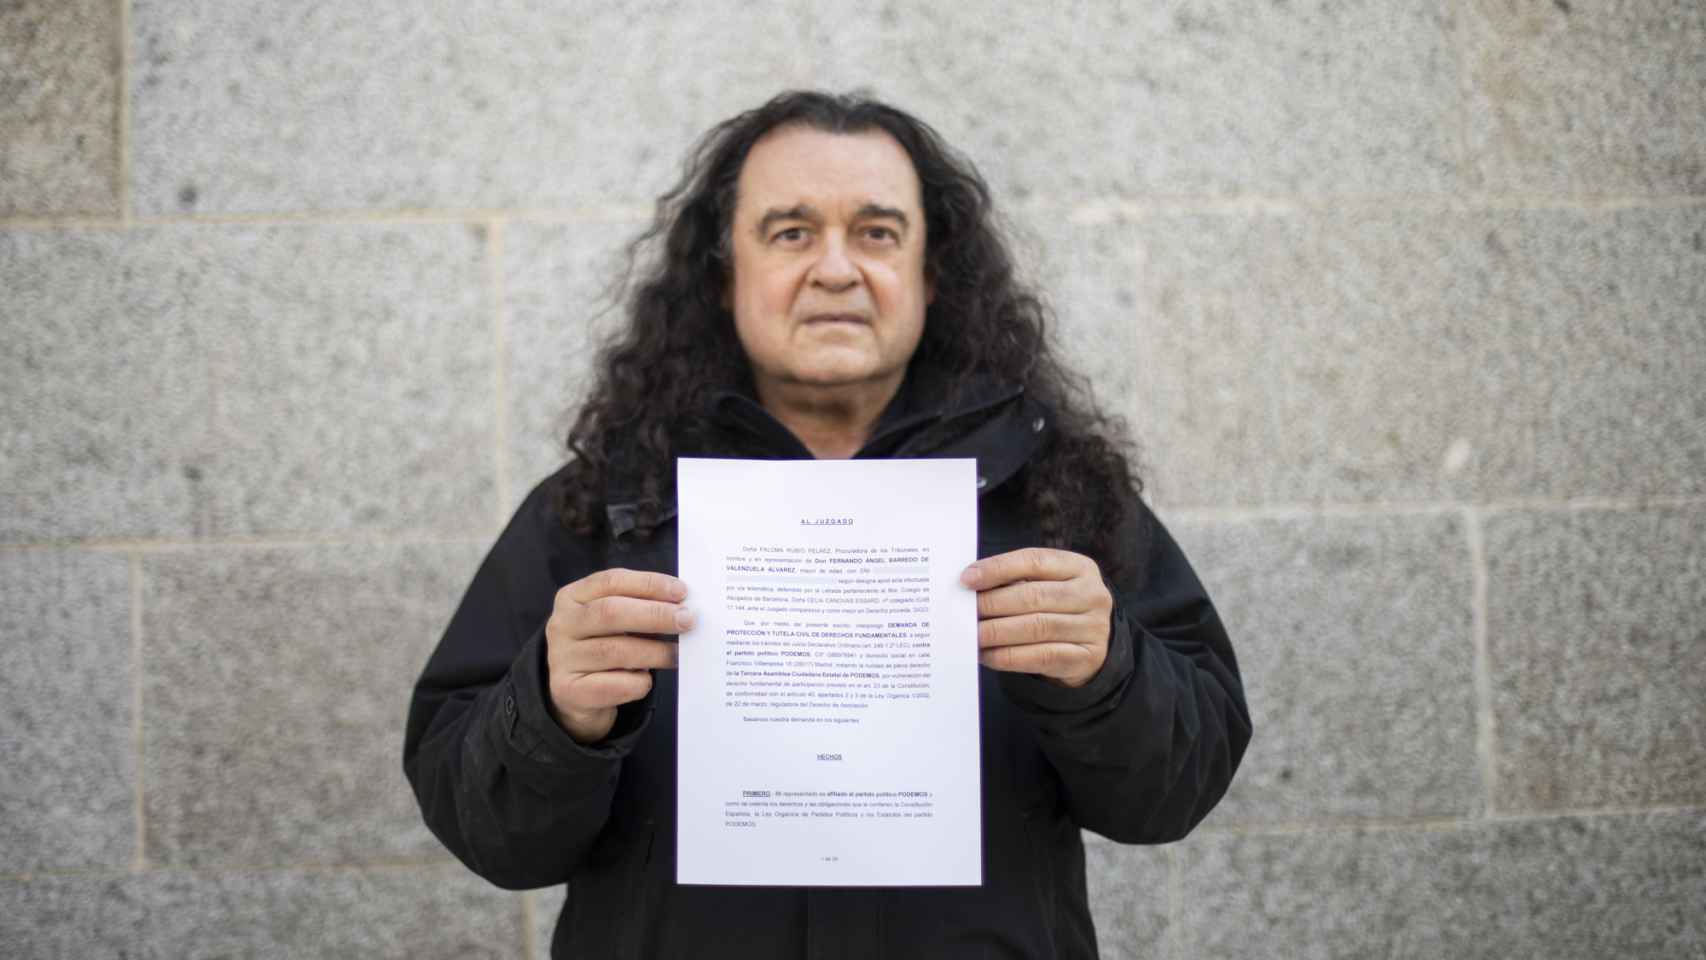 El escultor y voz crítica de Podemos, enseña la demanda que ha interpuesto contra el proceso de Vistalegre III.